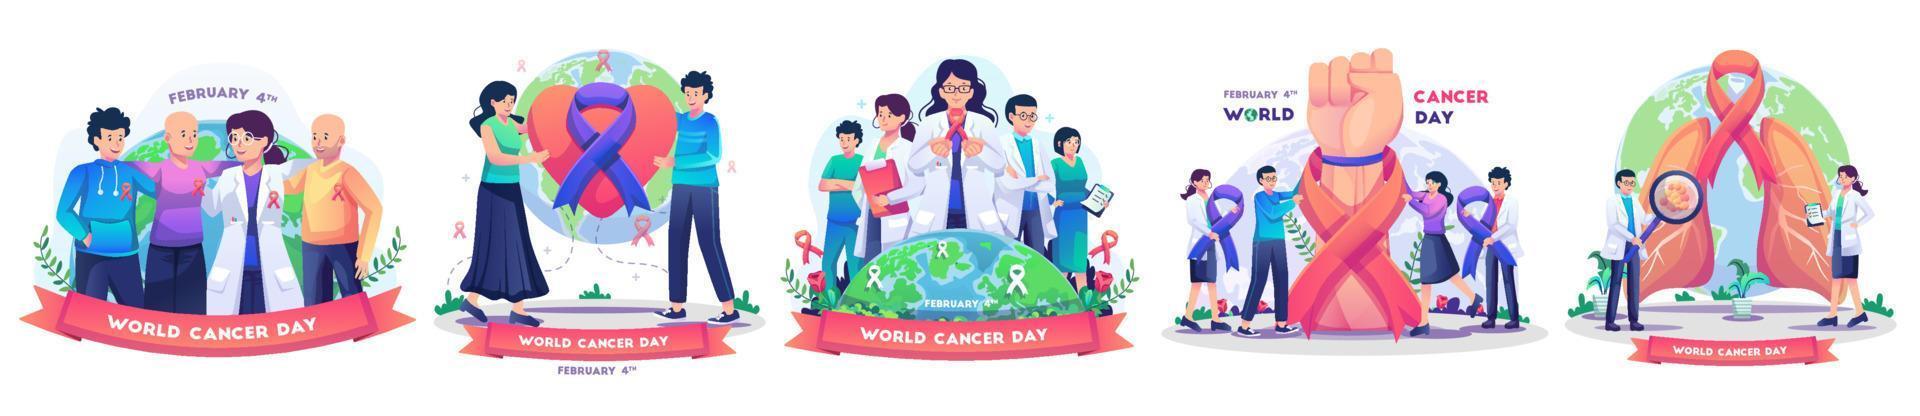 conjunto de concepto del día mundial del cáncer con personas, médicos, enfermeras y personal médico celebran la ilustración vectorial de estilo plano del día mundial del cáncer vector